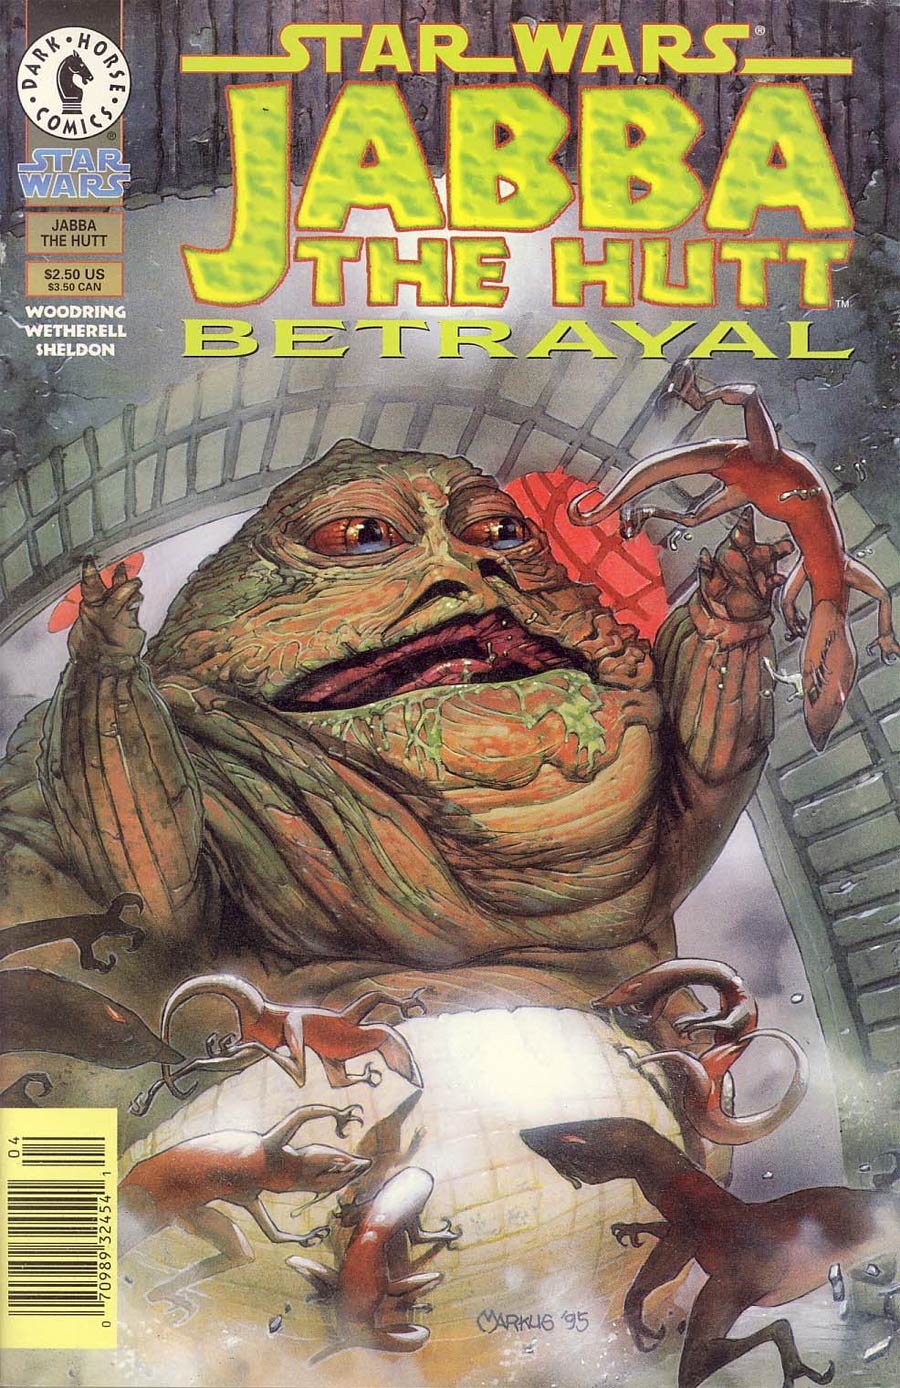 Star Wars Jabba The Hutt The Betrayal Newsstand Edition